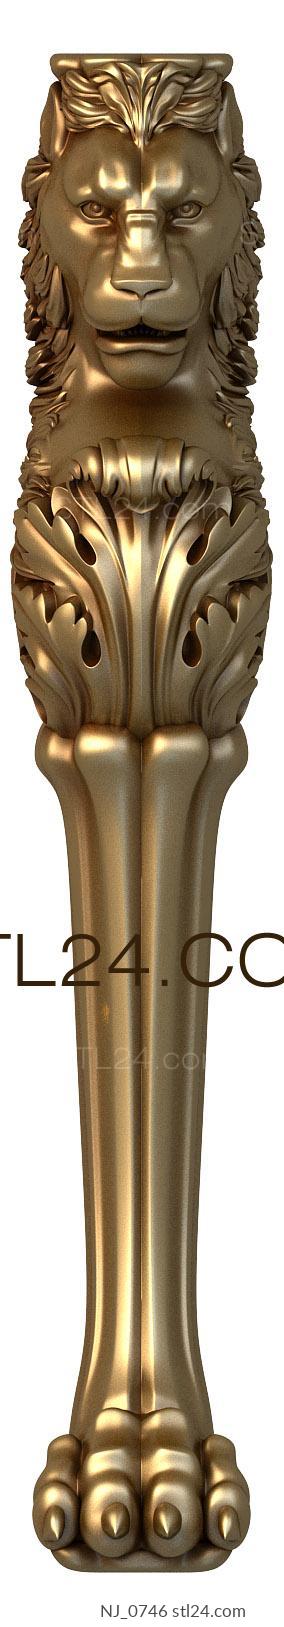 Ножки (NJ_0746) 3D модель для ЧПУ станка